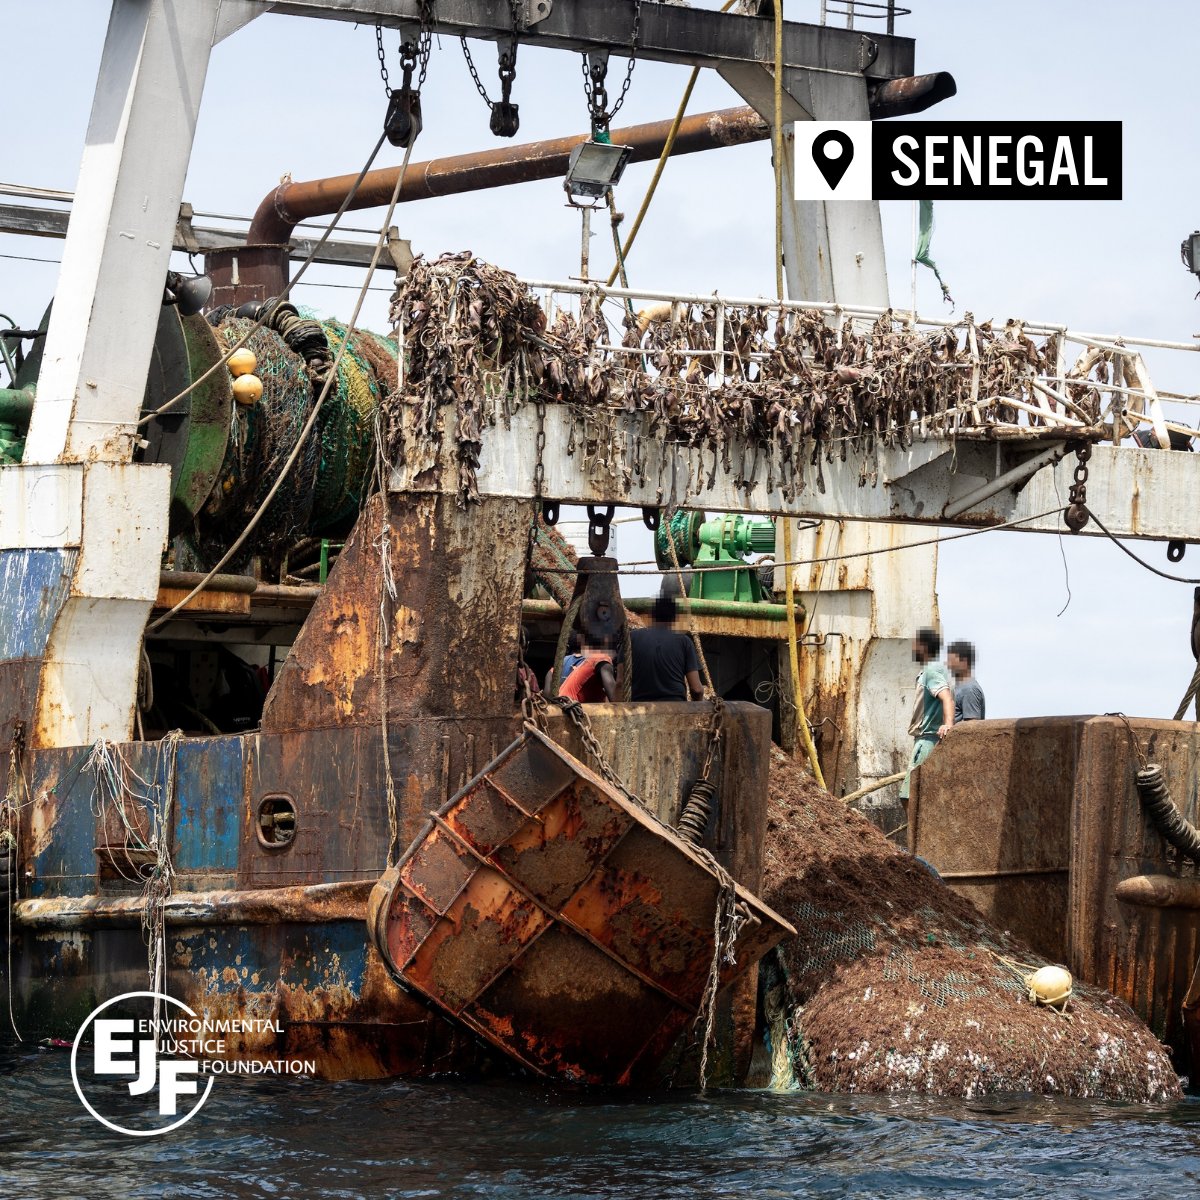 Ausländische Trawler, die illegal in Gebieten fischen, die Kleinfischern vorbehalten sind, profitieren von mangelnder Transparenz in Senegals Fischerei. Fischer berichteten von zerstörten Kanus und Kollisionen mit Schiffen, bei denen tragischerweise auch Menschen ums Leben kamen.